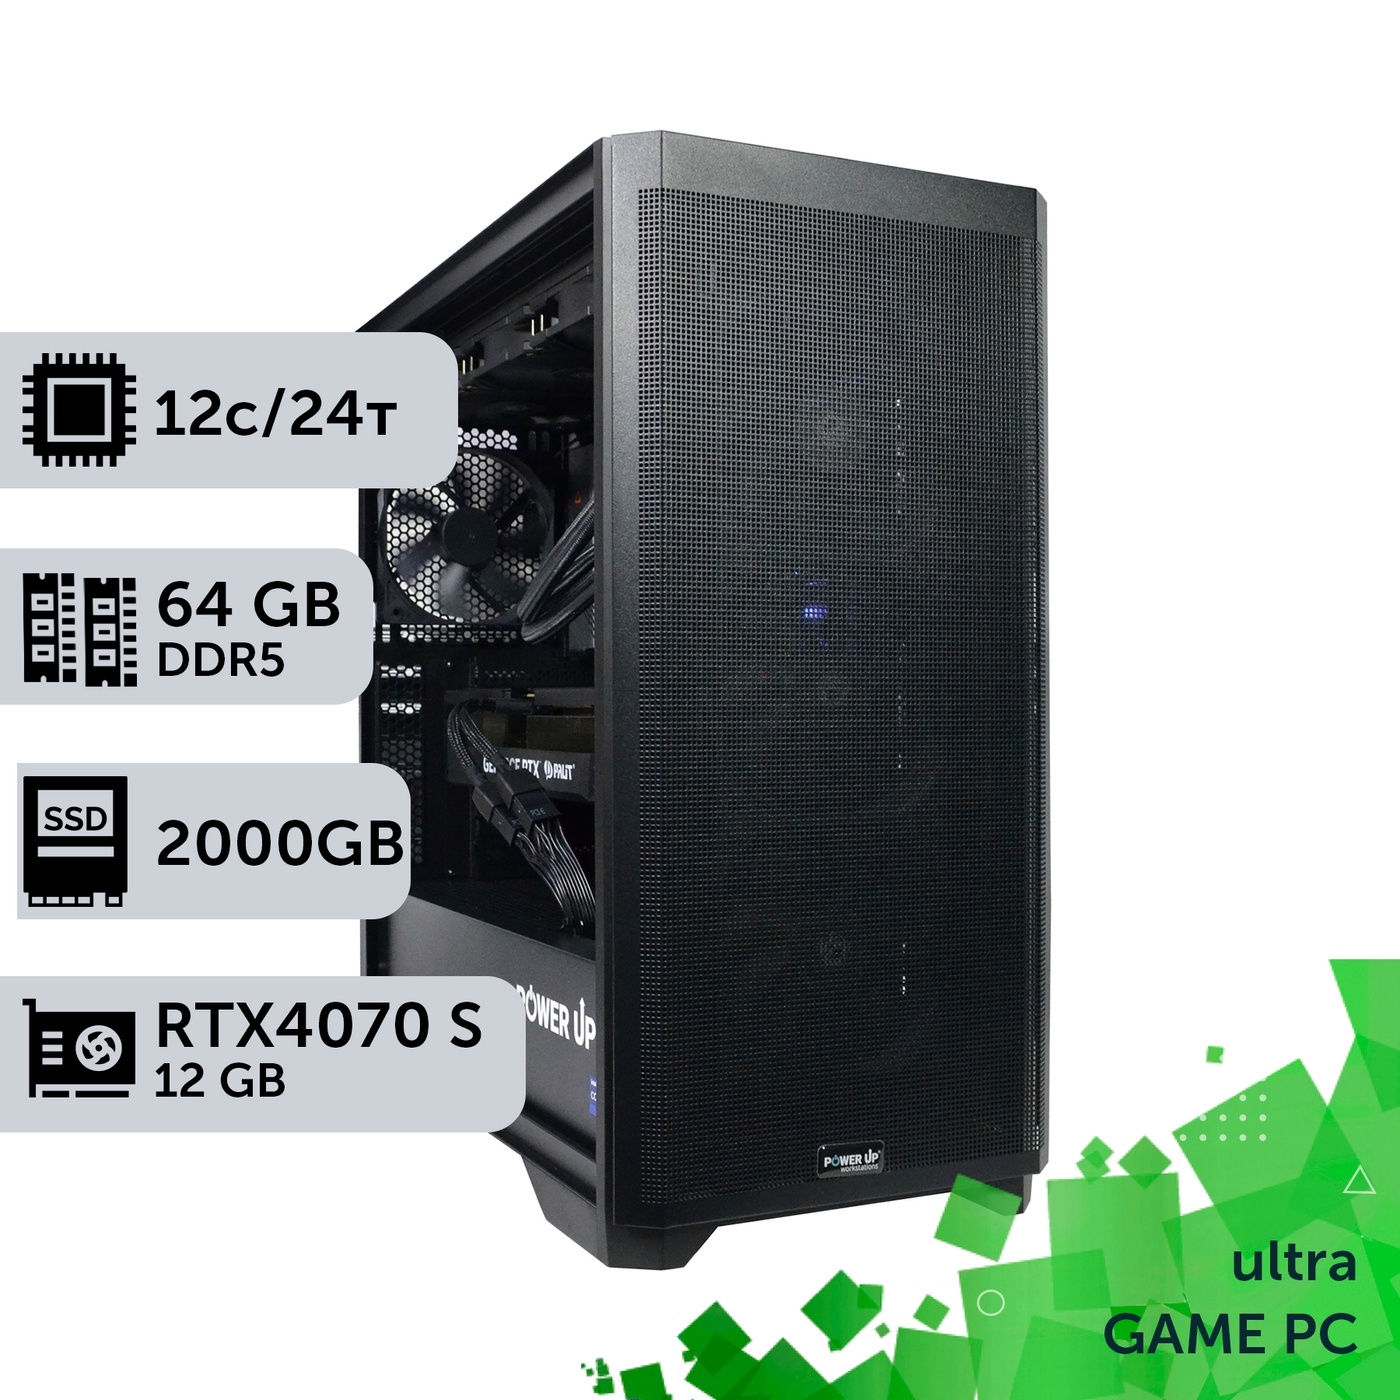 Ігровий комп'ютер GamePC Ultra #375 Ryzen 9 7900x/64 GB/SSD 2TB/GeForce RTX 4070 Super 12GB